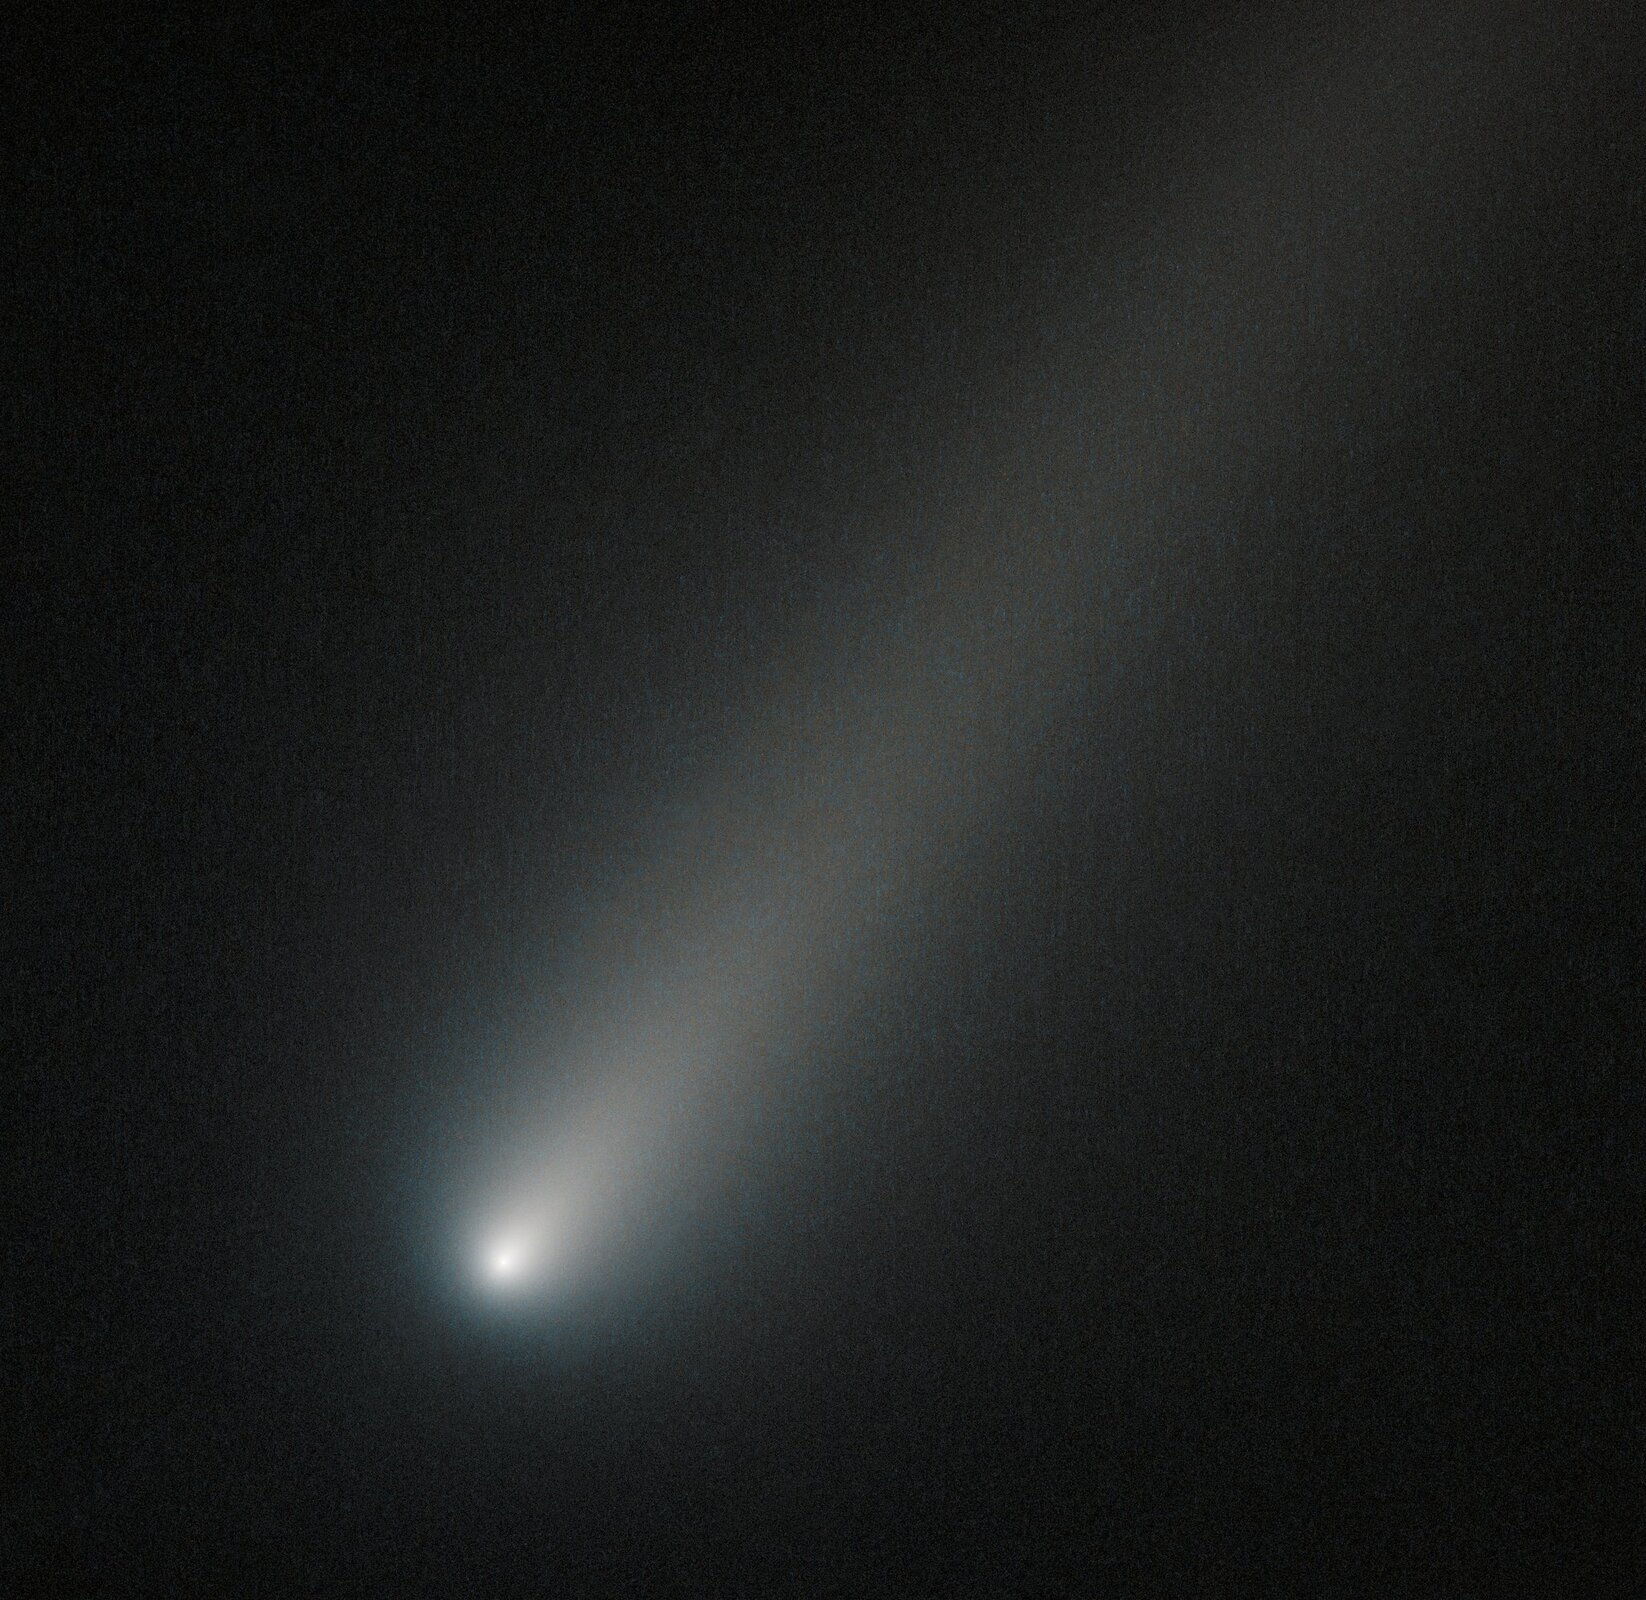 Zdjęcie przedstawia kometę ISON uwiecznioną przez teleskop Hubble'a podczas przelotu przez orbitę Marsa podczas zbliżenia do Układu Słonecznego w 2013 roku na miesiąc przed osiągnięciem peryhelium. Kometa zajmuje praktycznie cały kadr, jej jądro świeci jasnym światłem, a ogon jest wyraźny.